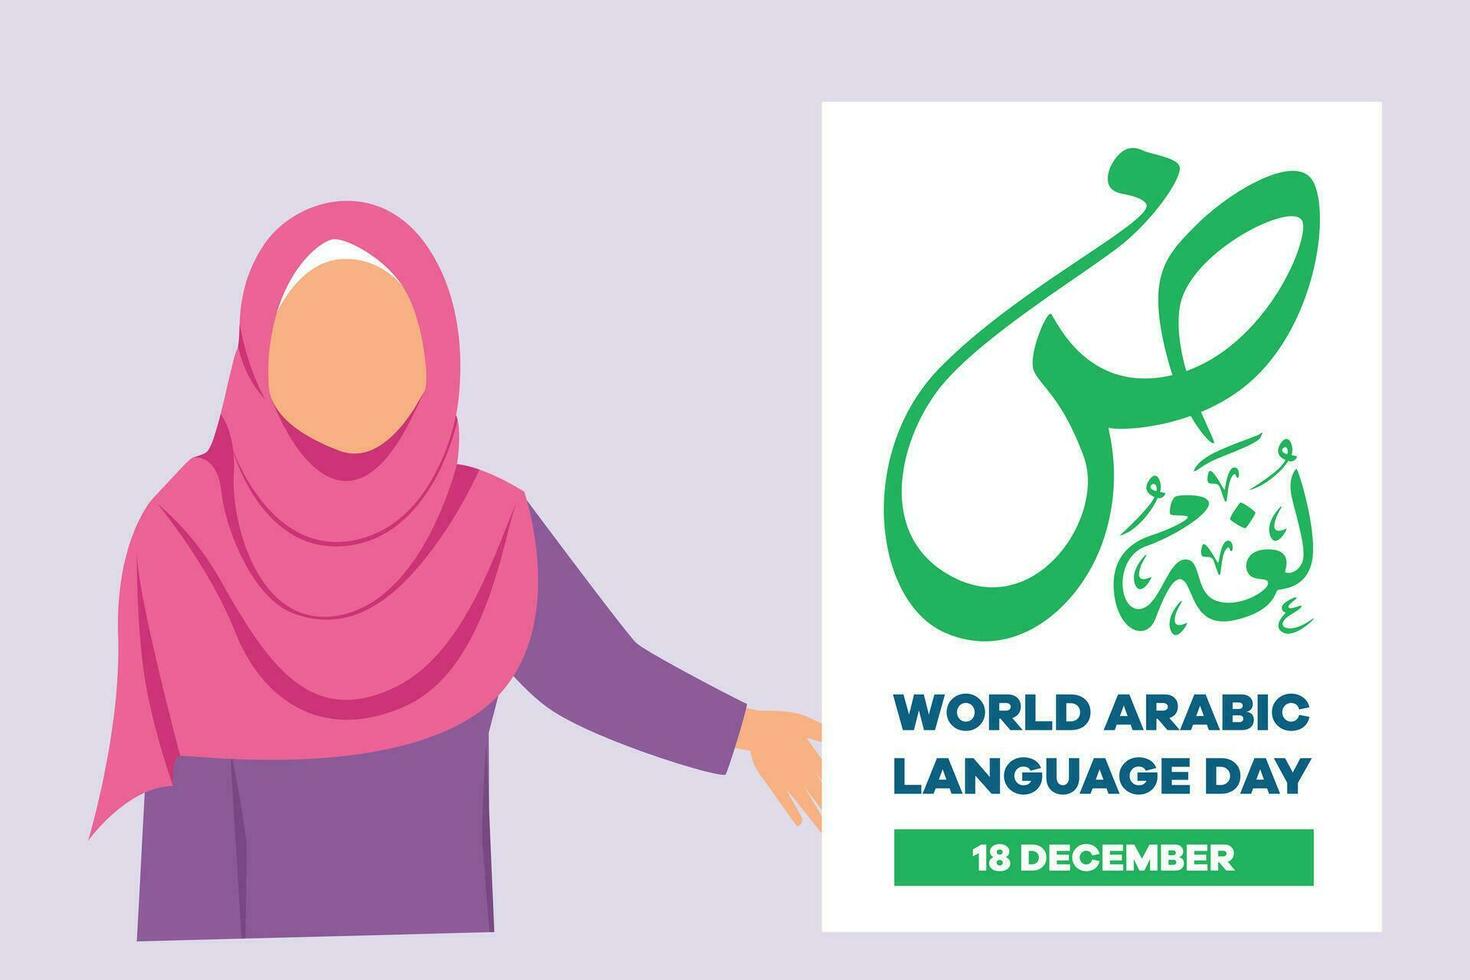 wereld Arabisch taal dag Aan 18 december. Arabisch taal concept. gekleurde vlak vector illustratie geïsoleerd.